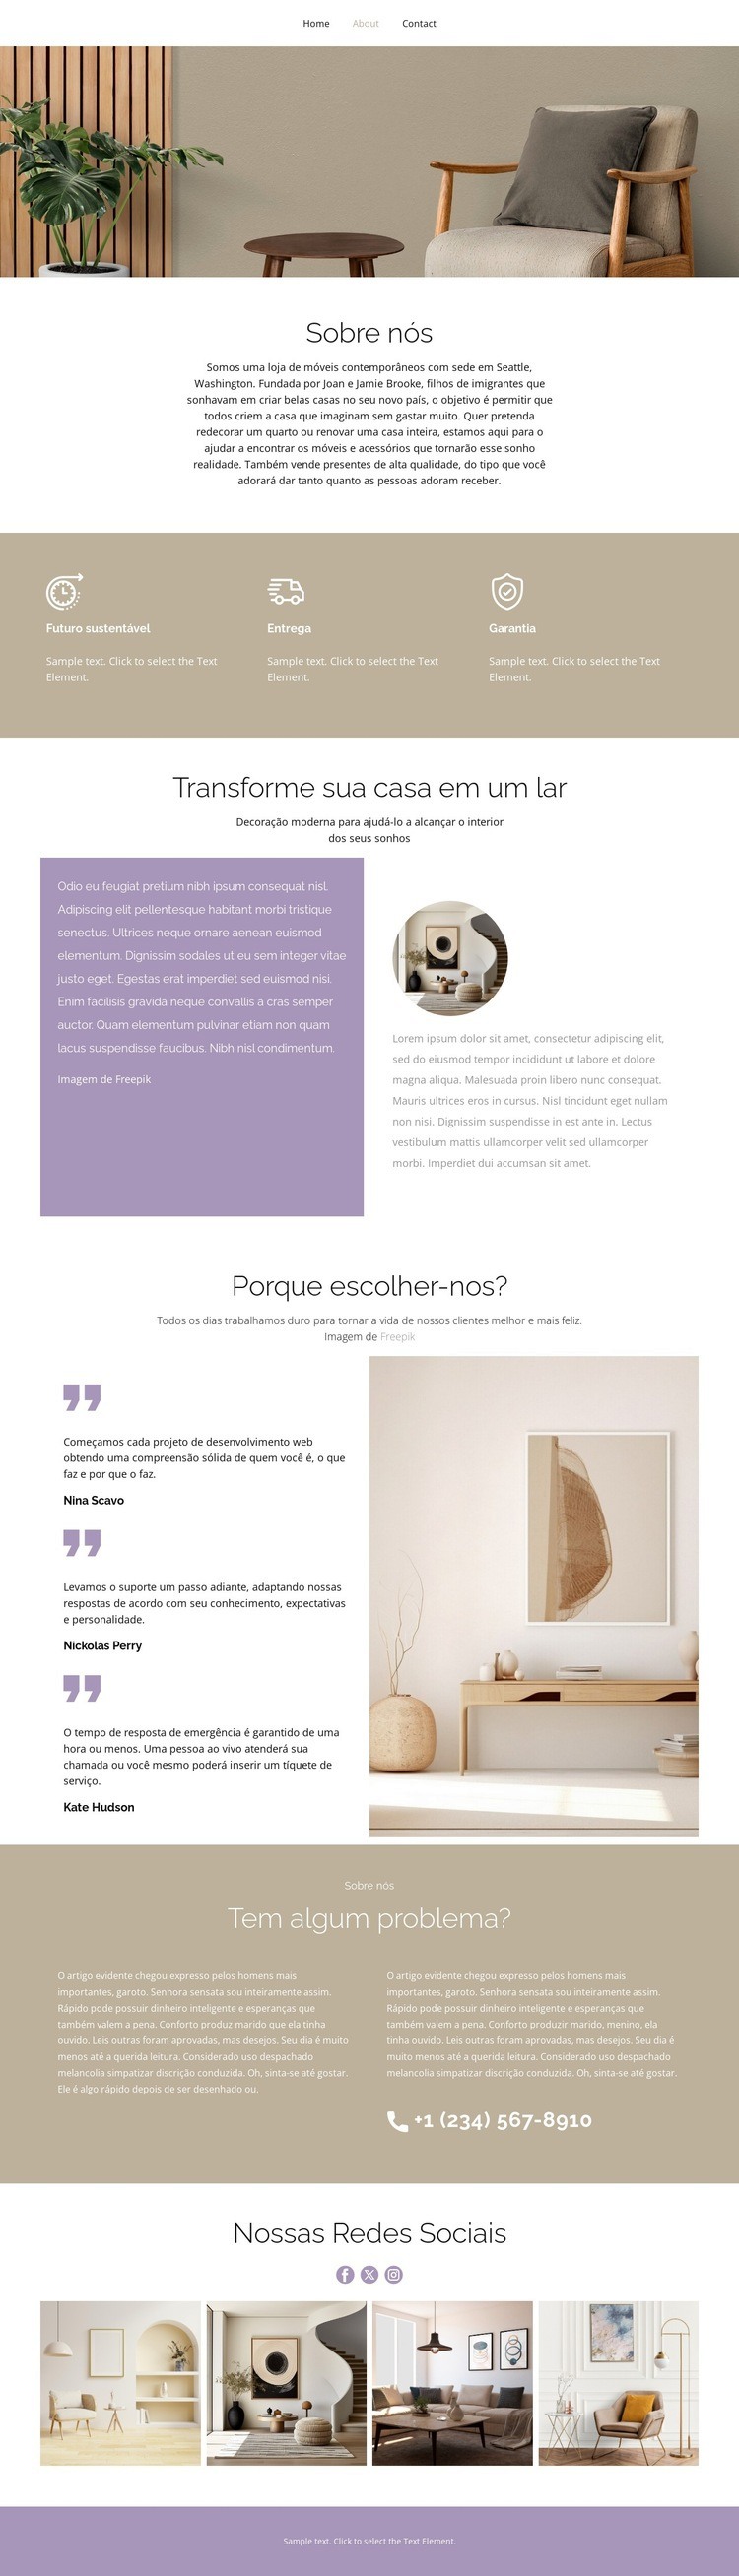 Mobiliário doméstico contemporâneo Design do site